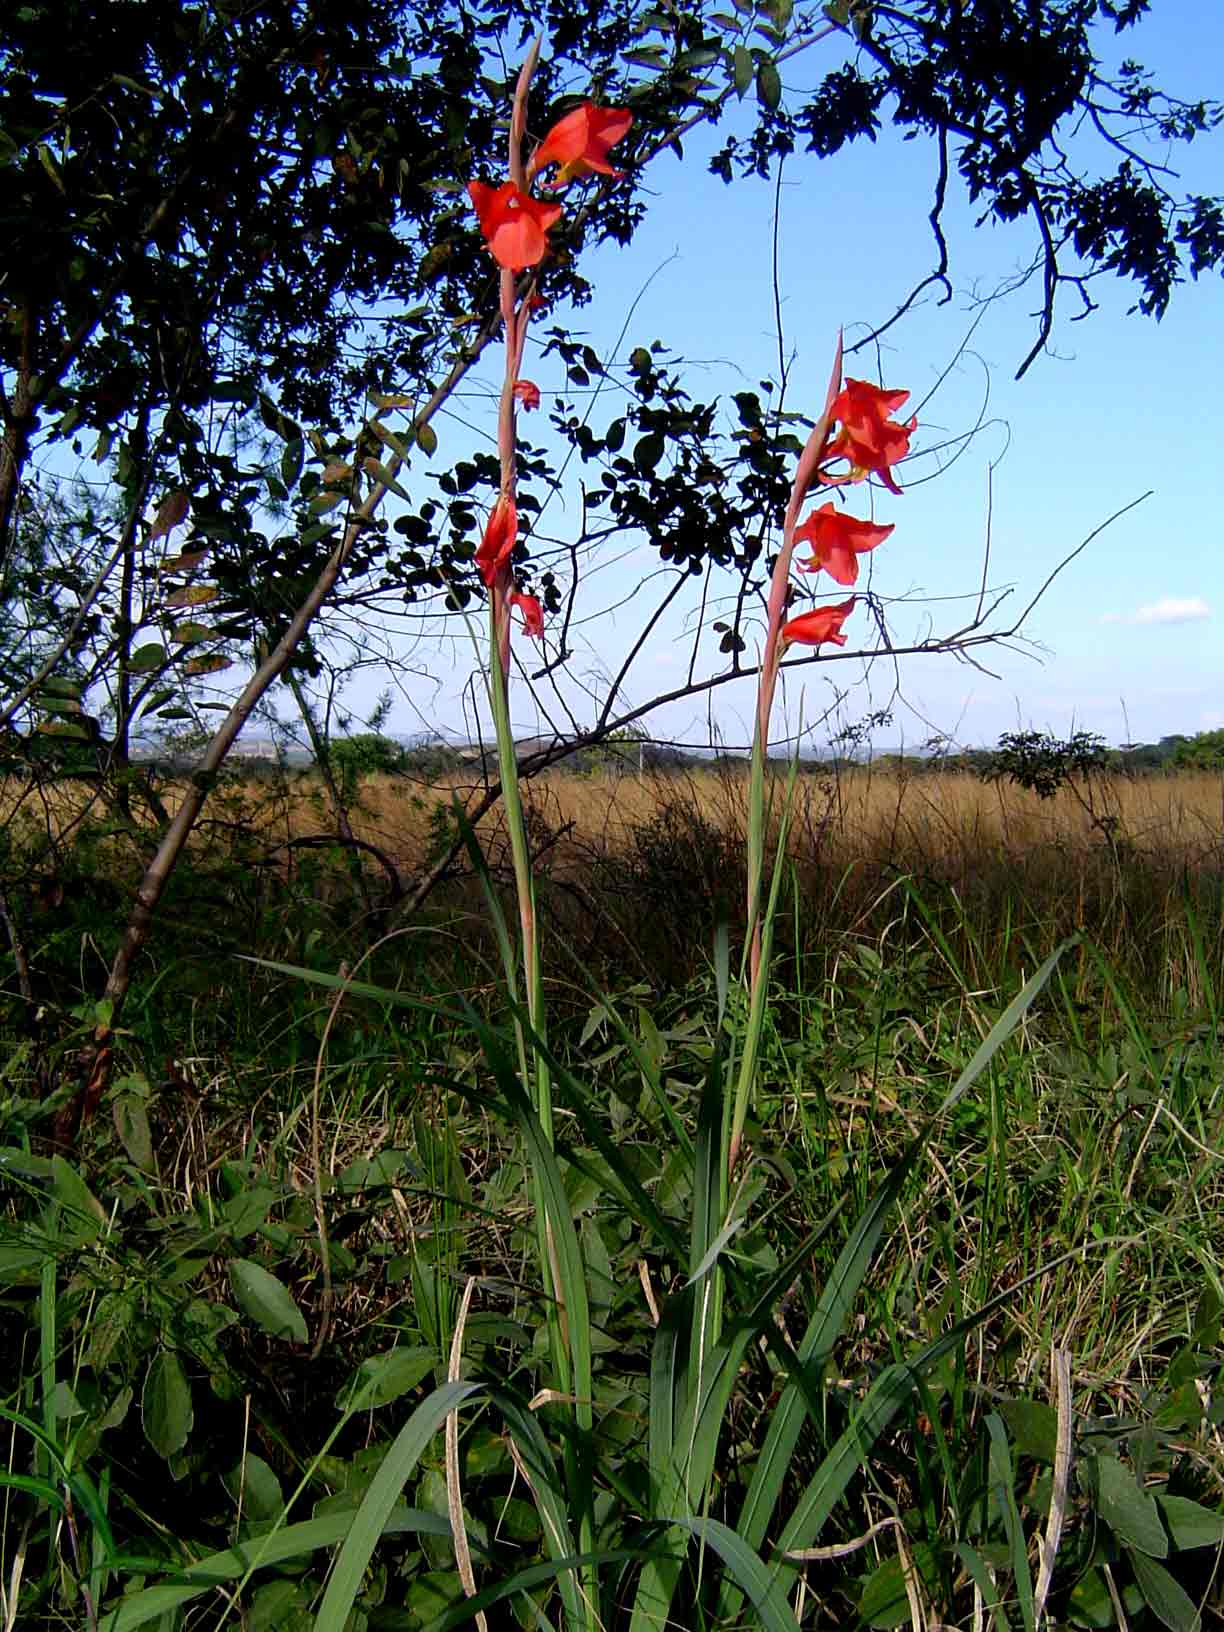 Gladiolus dalenii subsp. dalenii (red form)